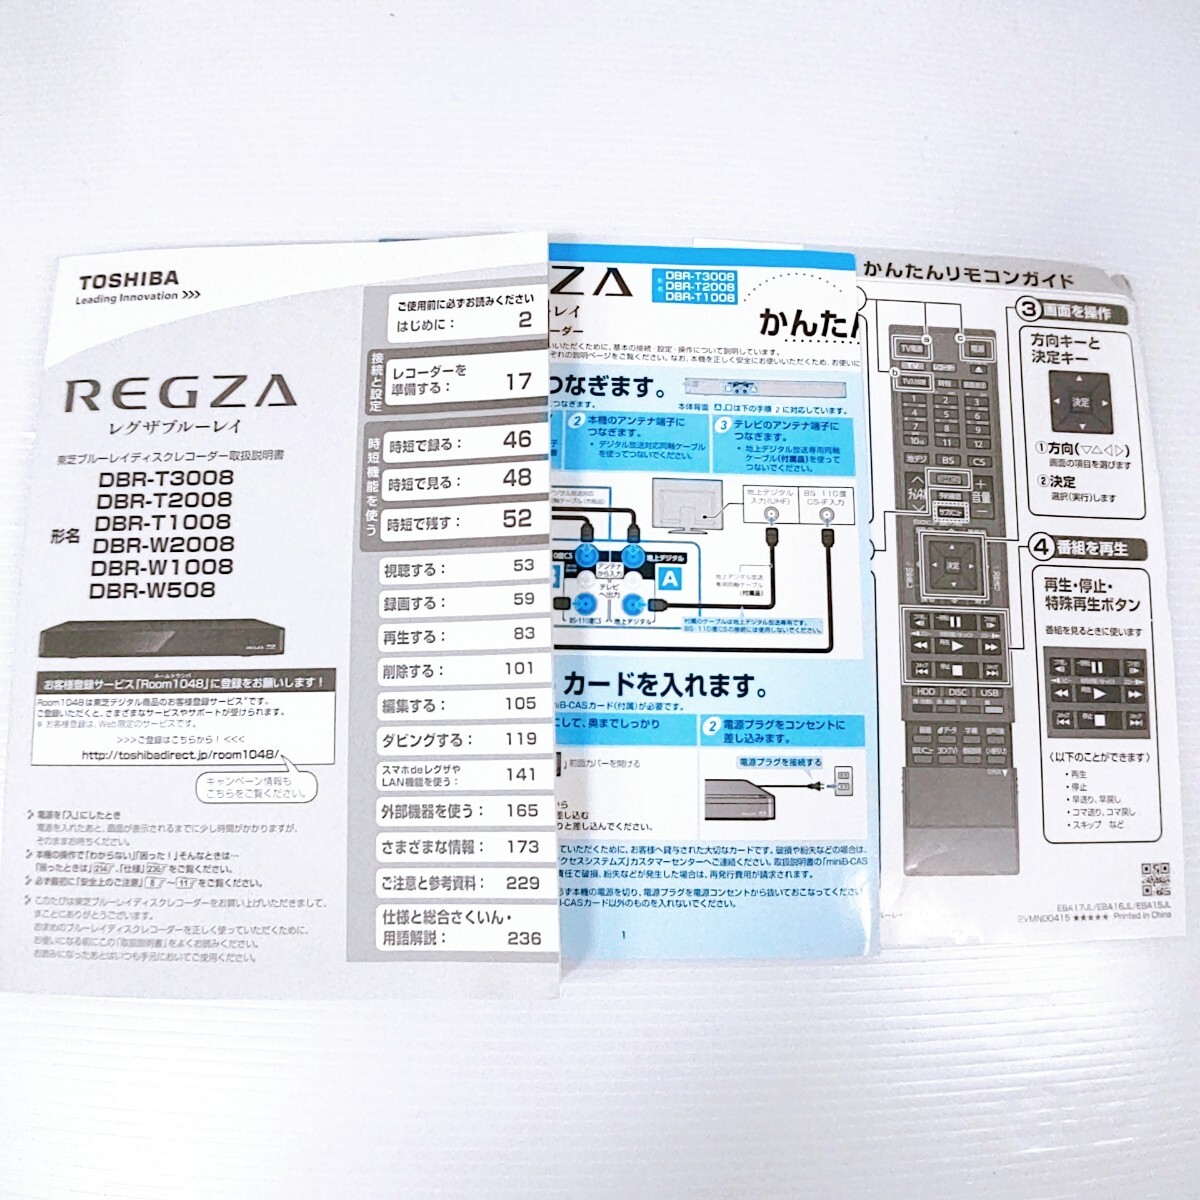 TOSHIBA REGZA レグザブルーレイ DBR-T2008